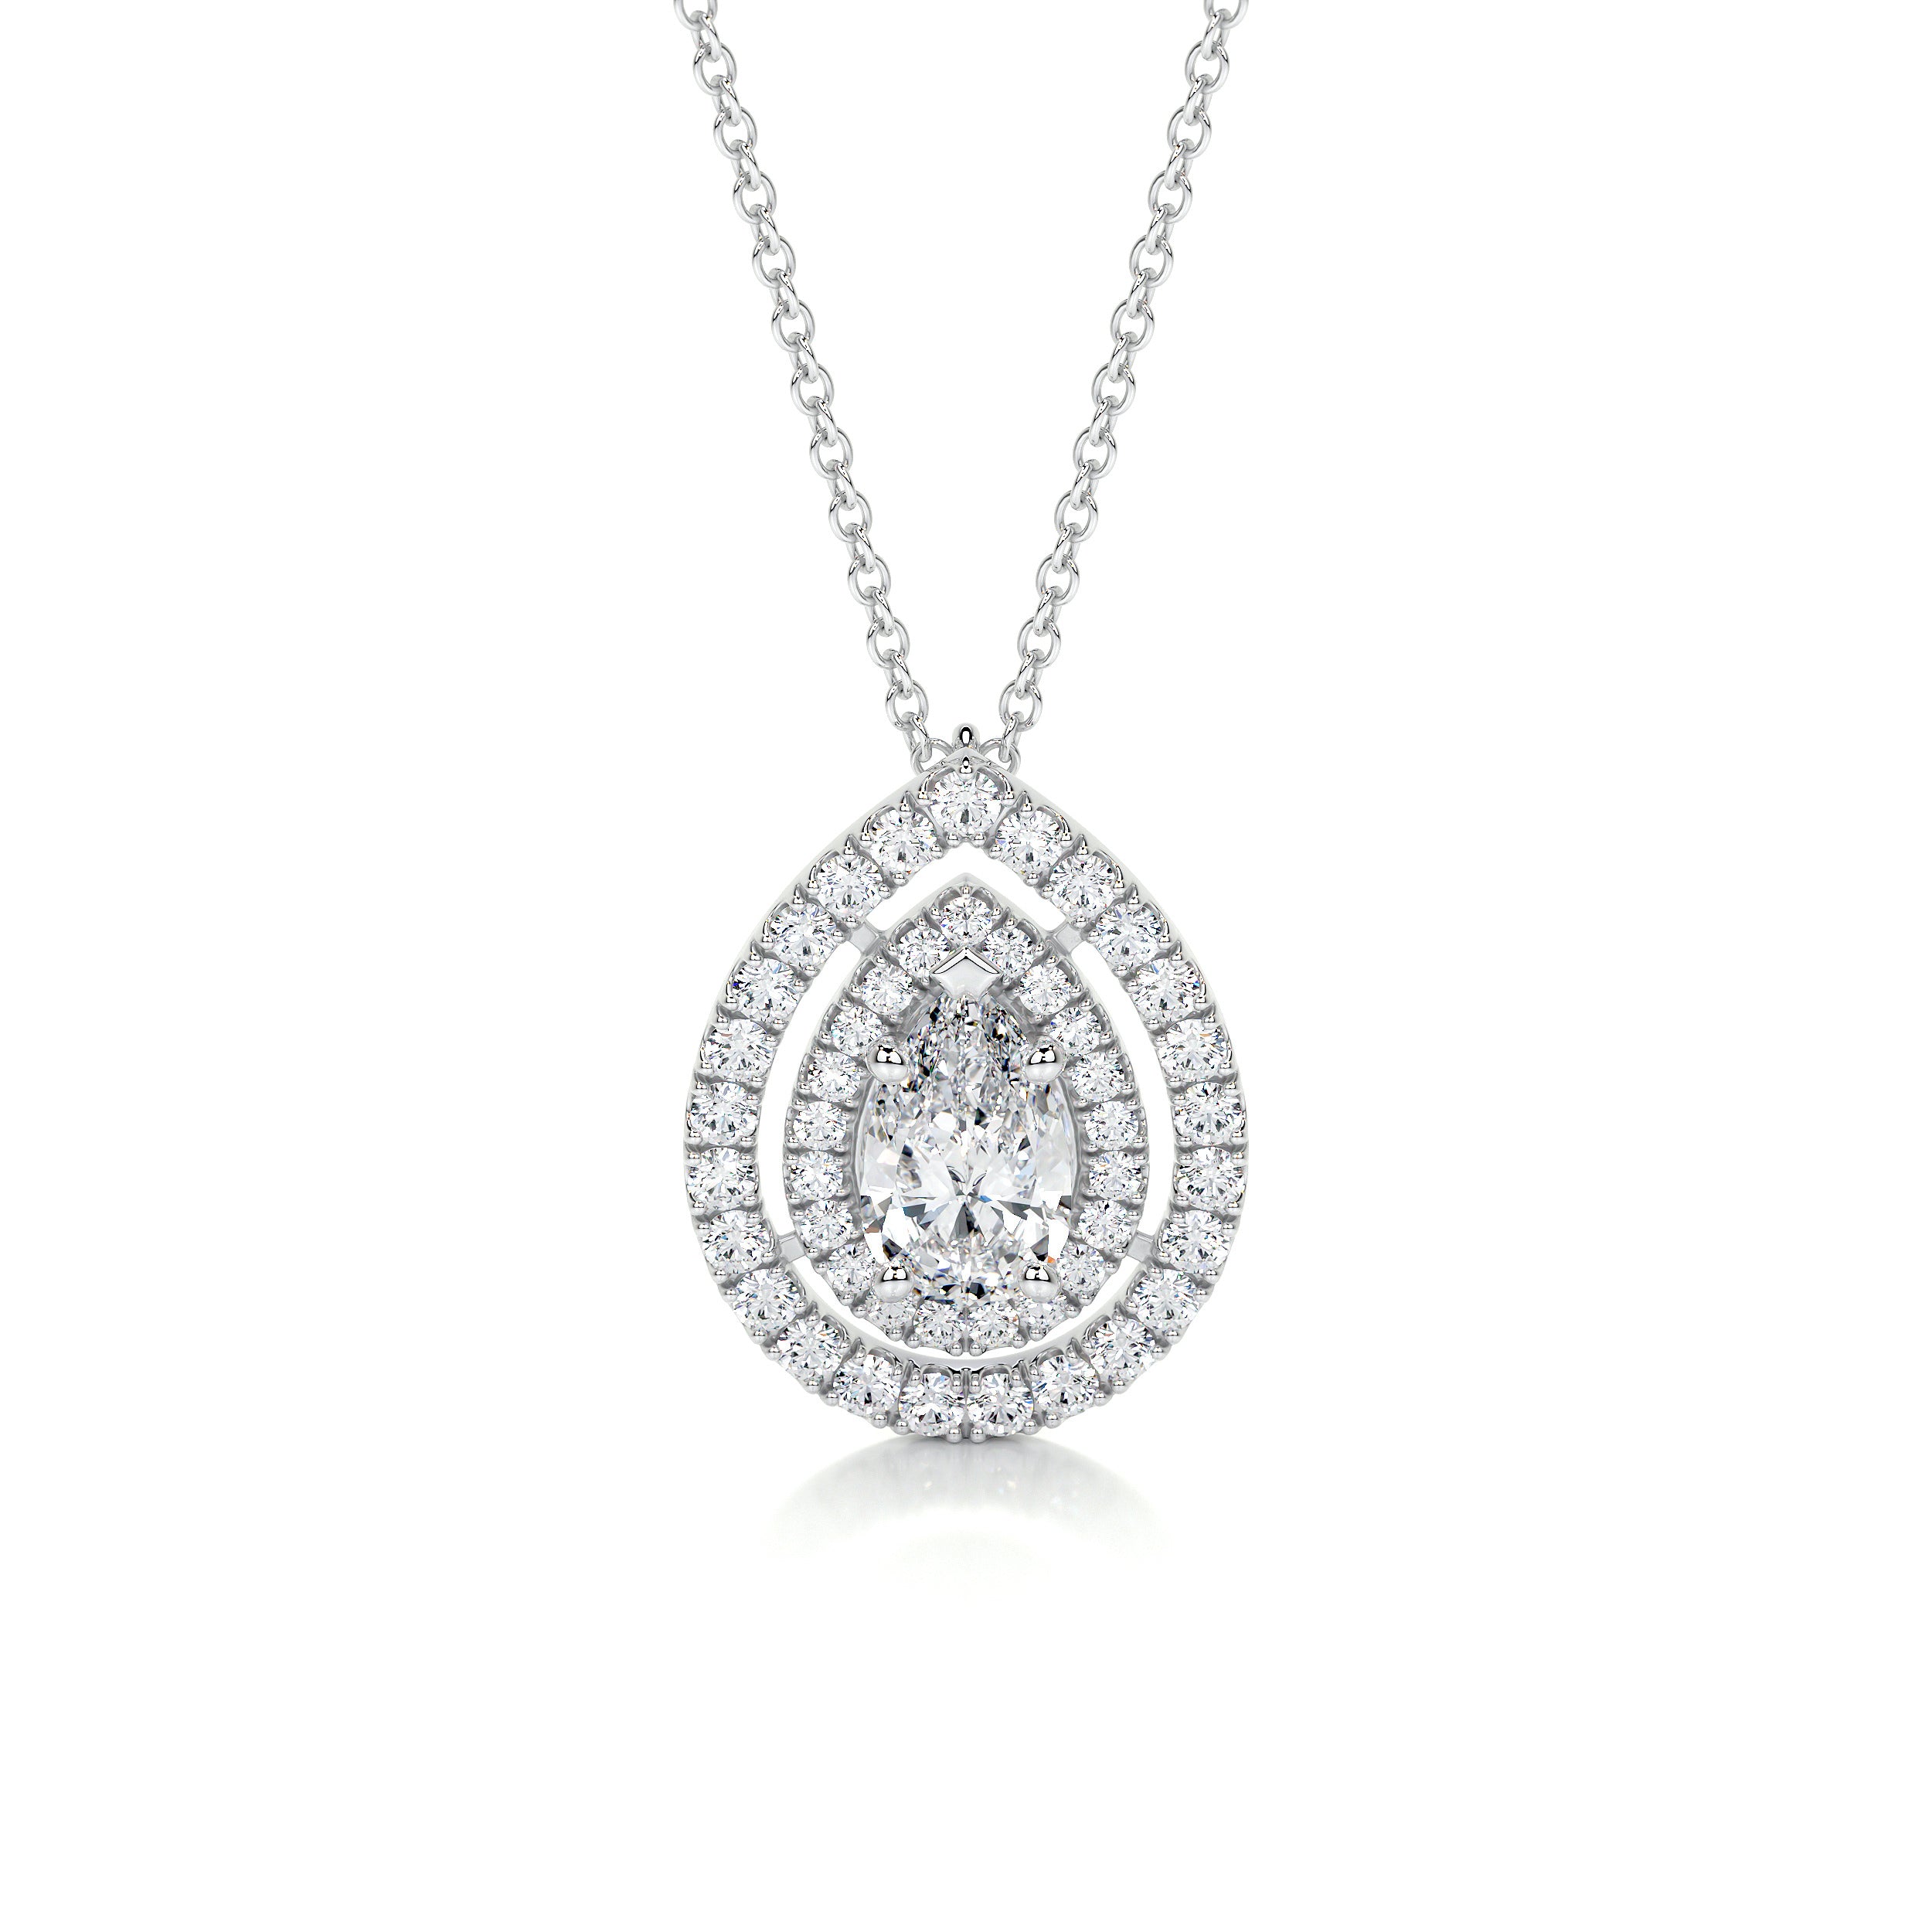 Averi Diamond Pendant   (1.5 Carat) -18K White Gold